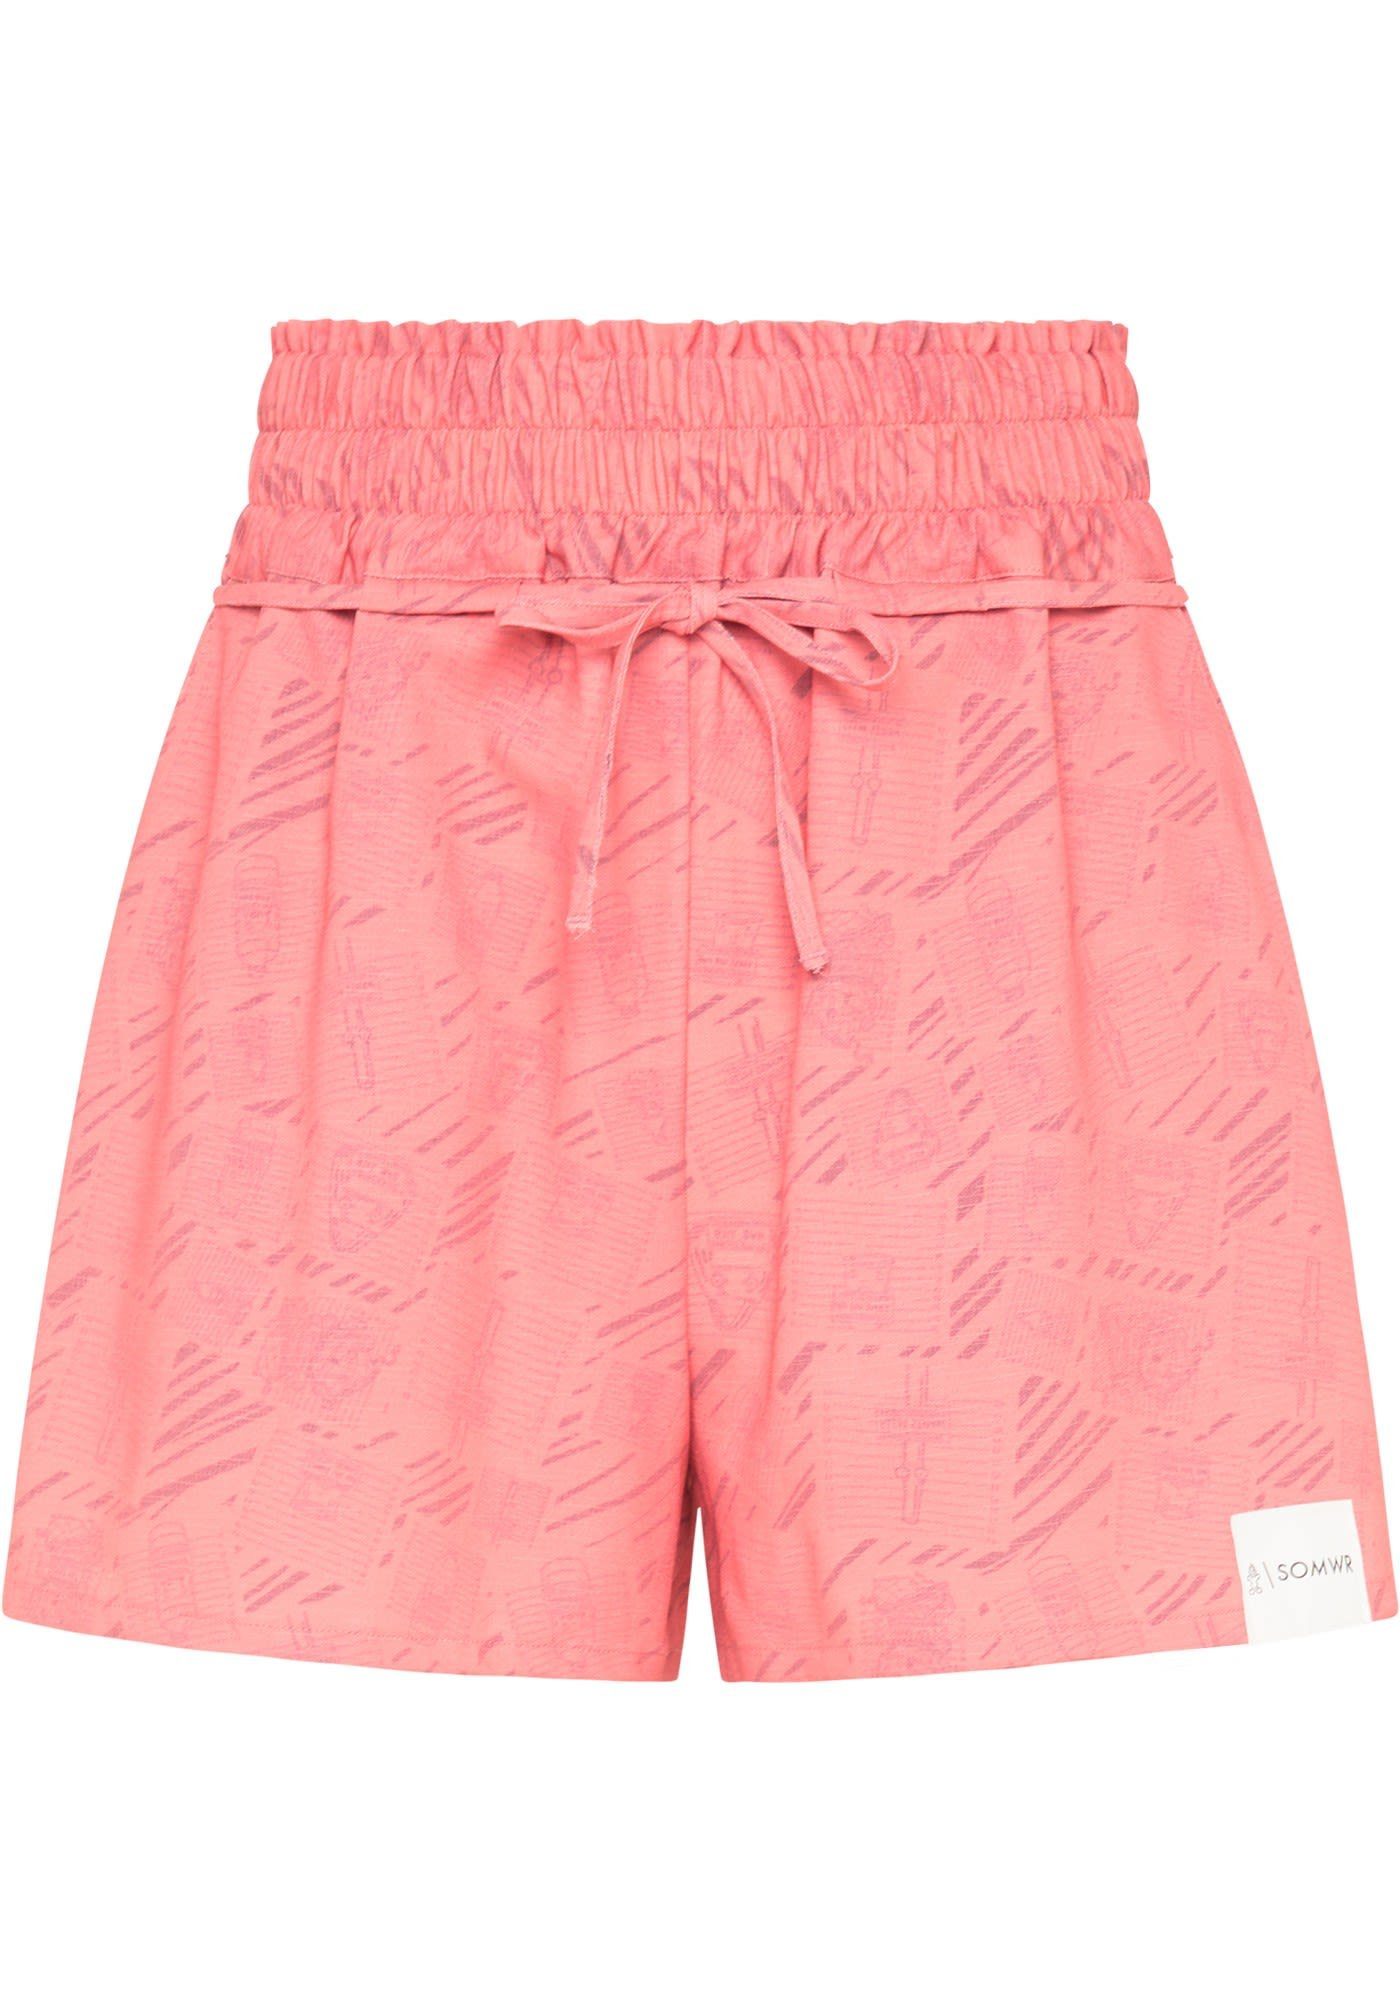 SOMWR Strandshorts Somwr W Short Crime Damen Shorts Tea Rose Pink